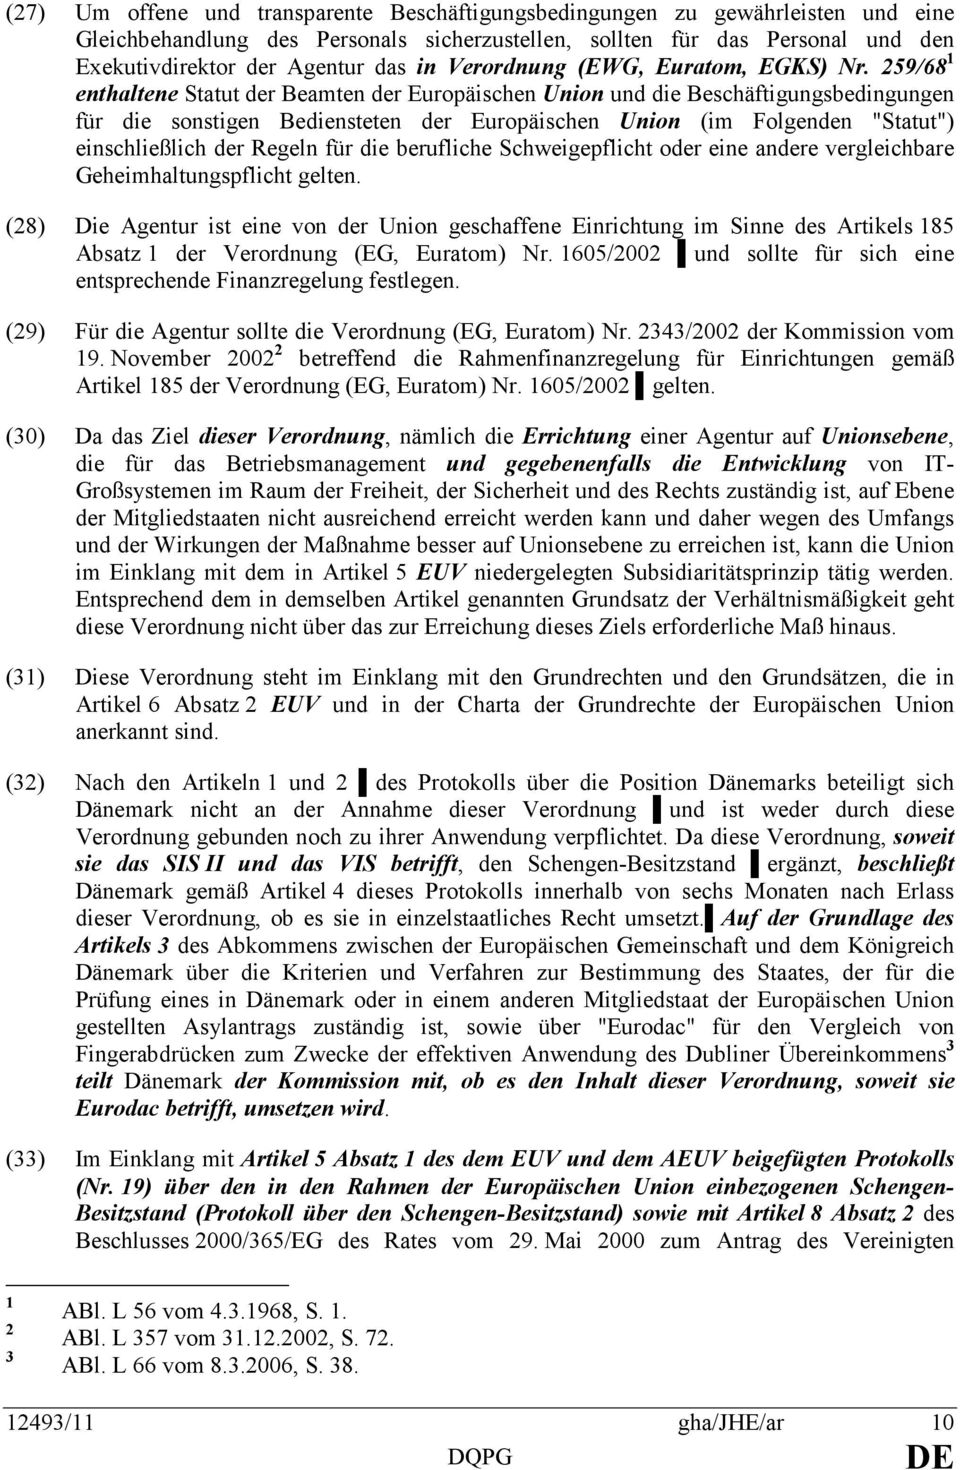 259/68 1 enthaltene Statut der Beamten der Europäischen Union und die Beschäftigungsbedingungen für die sonstigen Bediensteten der Europäischen Union (im Folgenden "Statut") einschließlich der Regeln